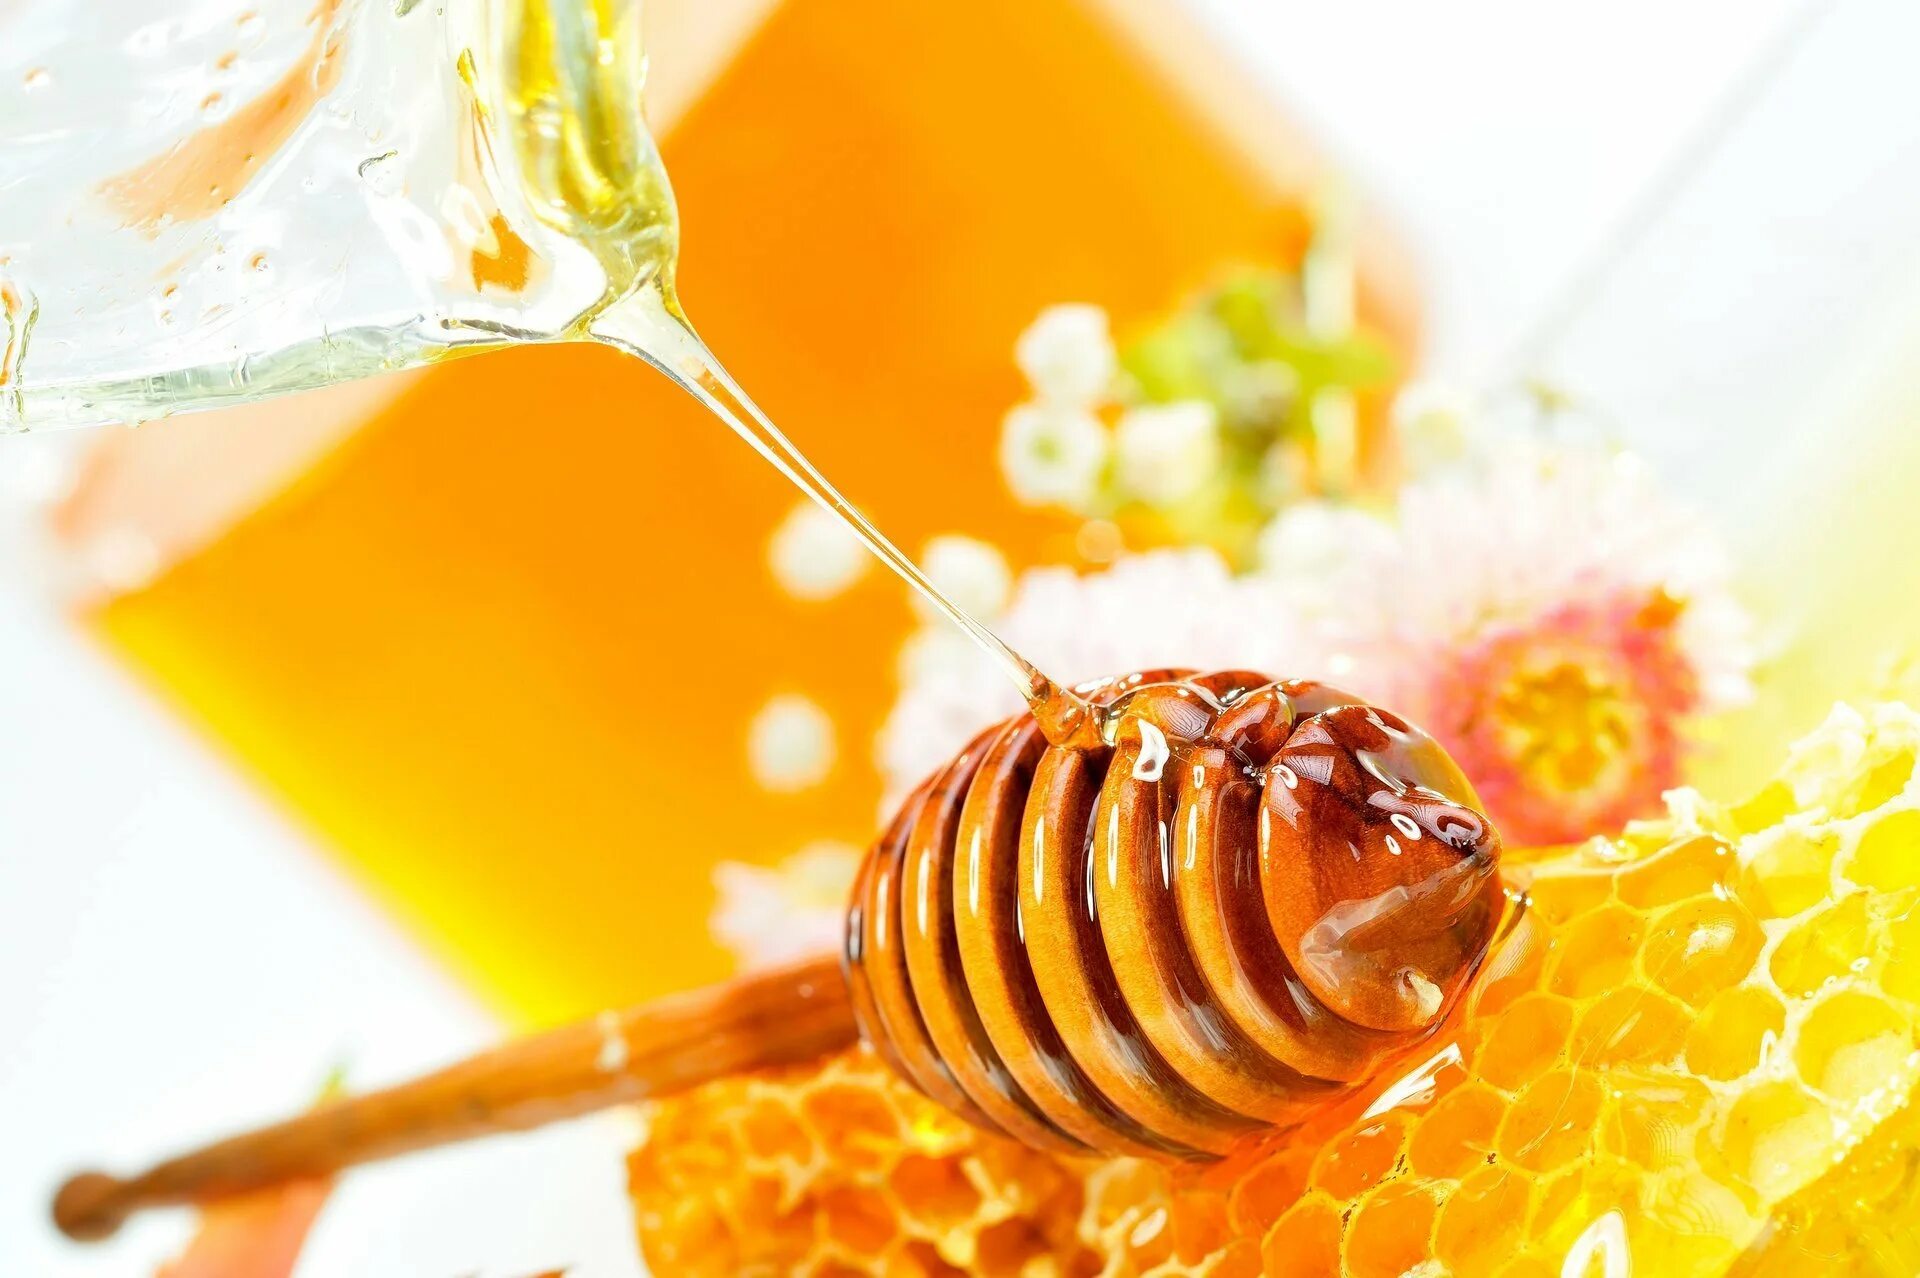 Honey медовый. Соты пчелиные. Пчелы и мед. Соты меда. Пчелиные соты с медом.